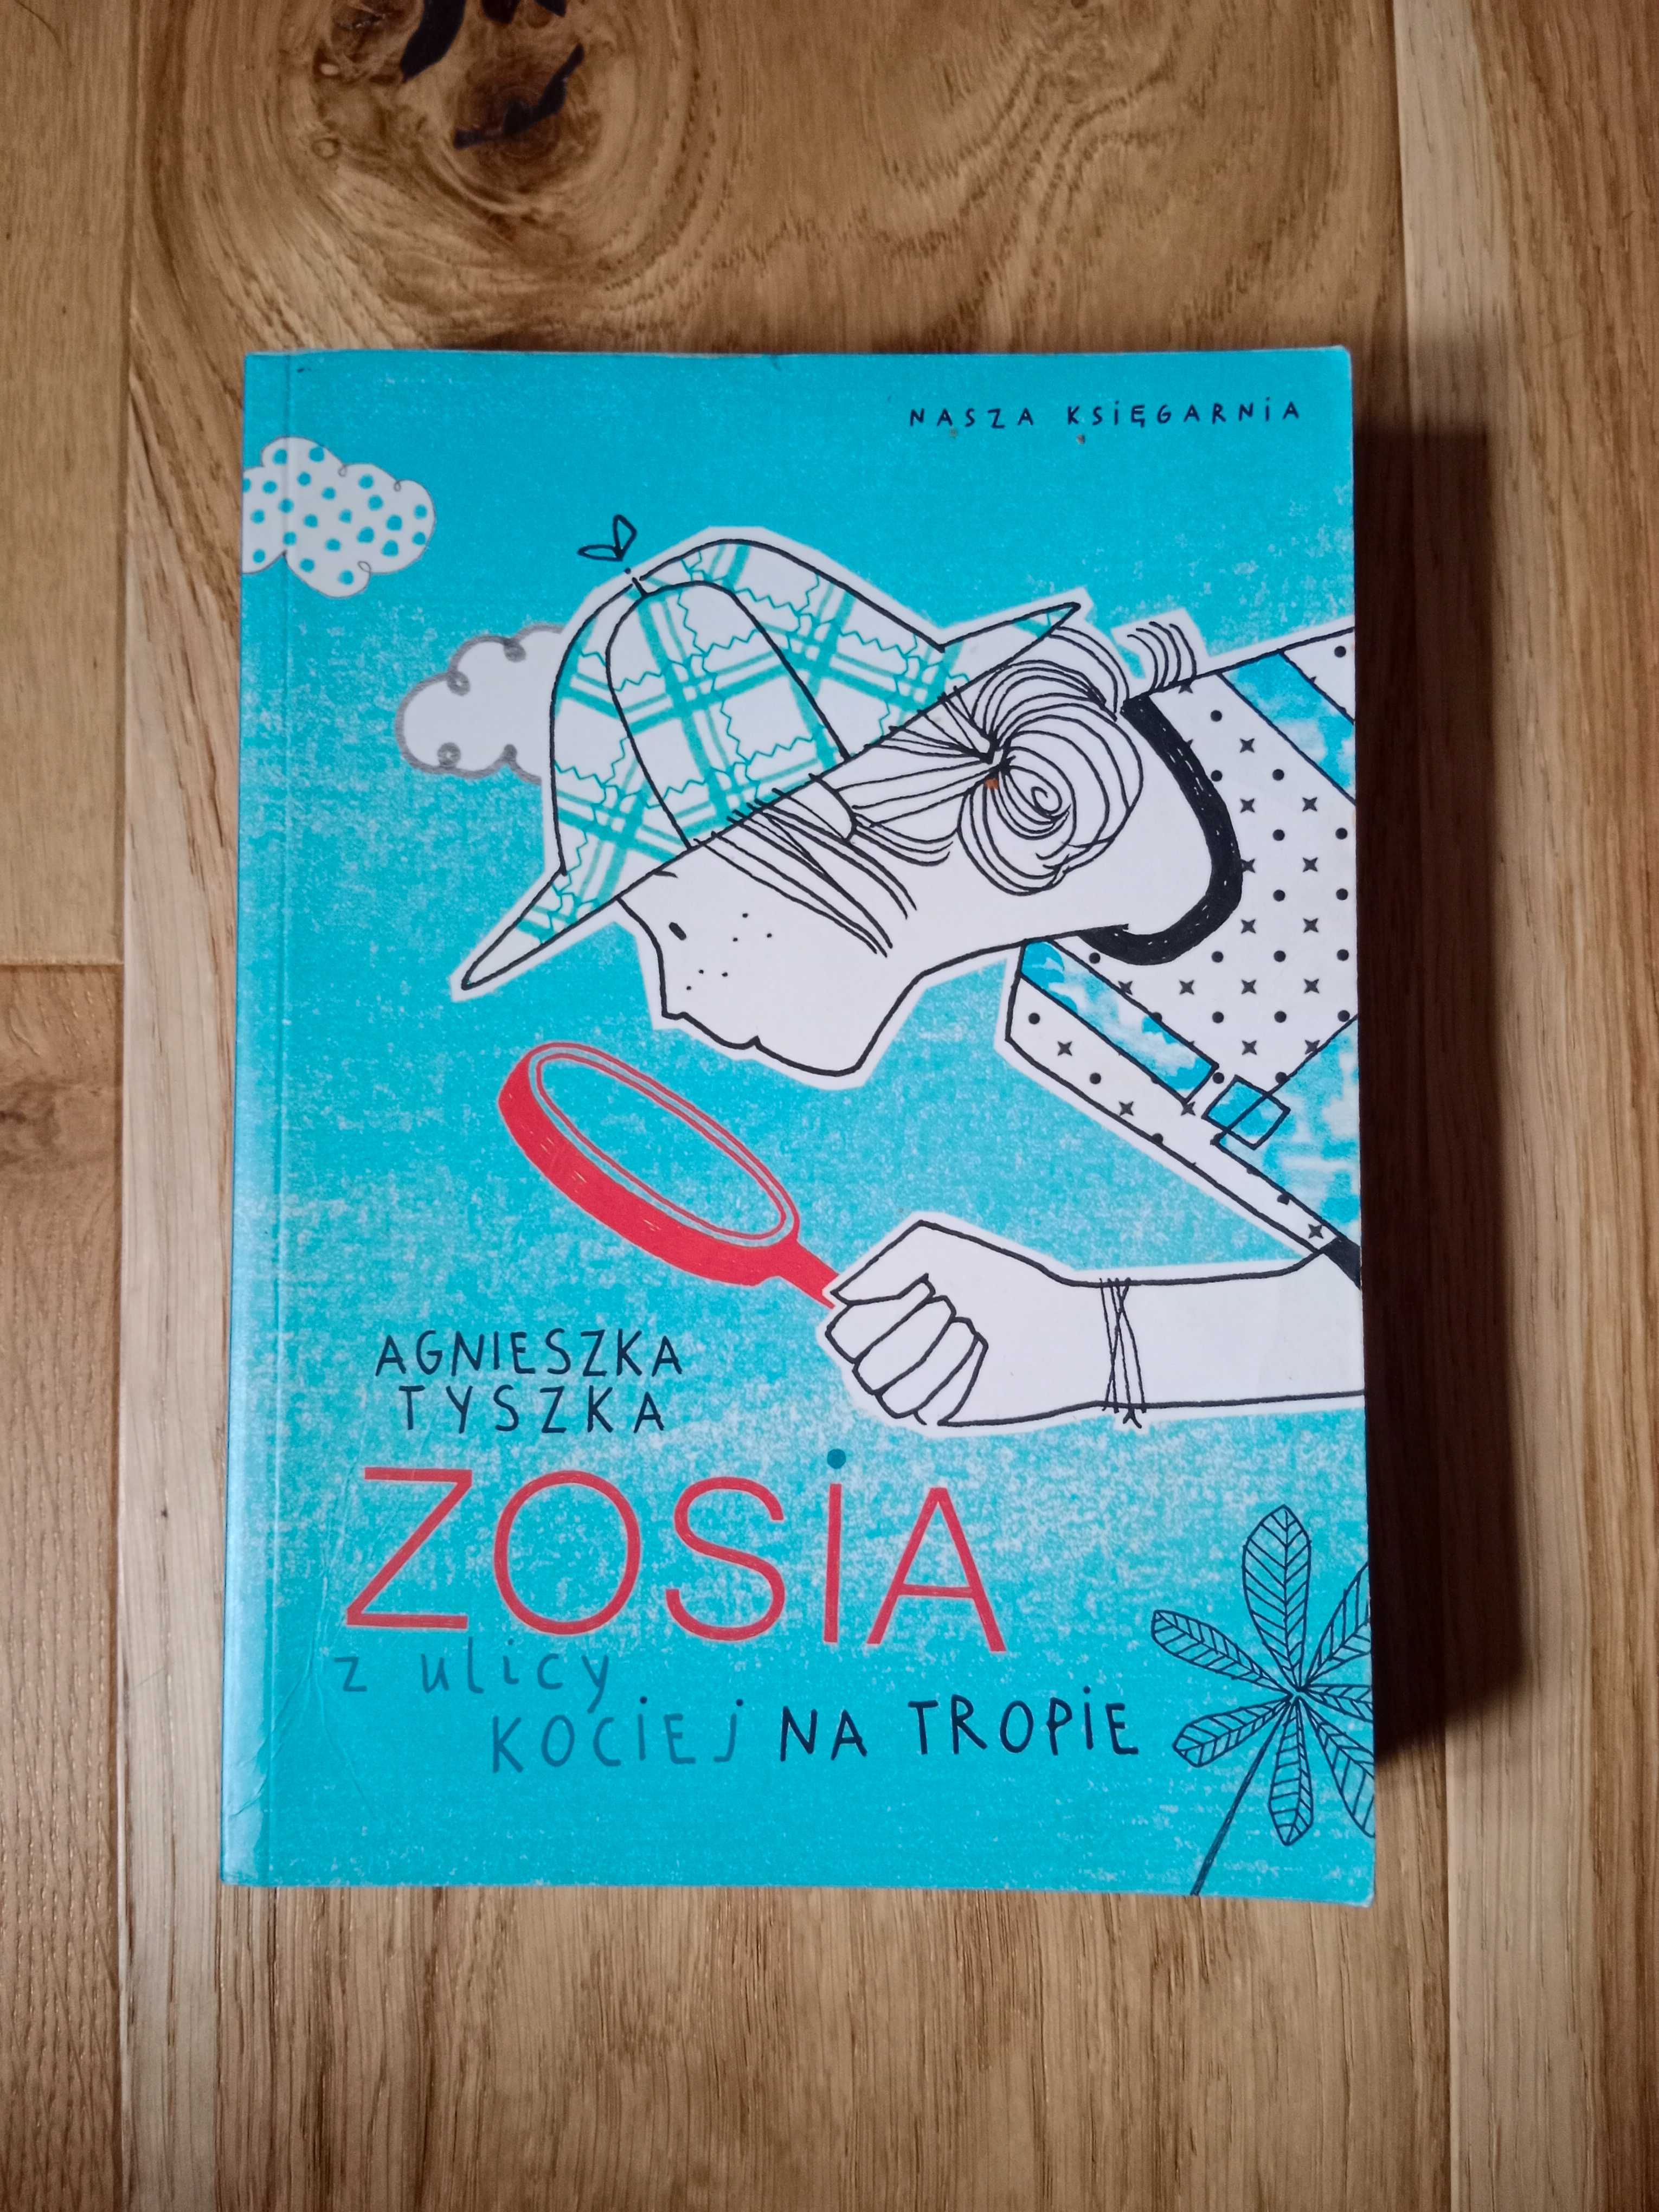 "Zosia z ulicy Kociej - Na tropie" - Agnieszka Tyszka